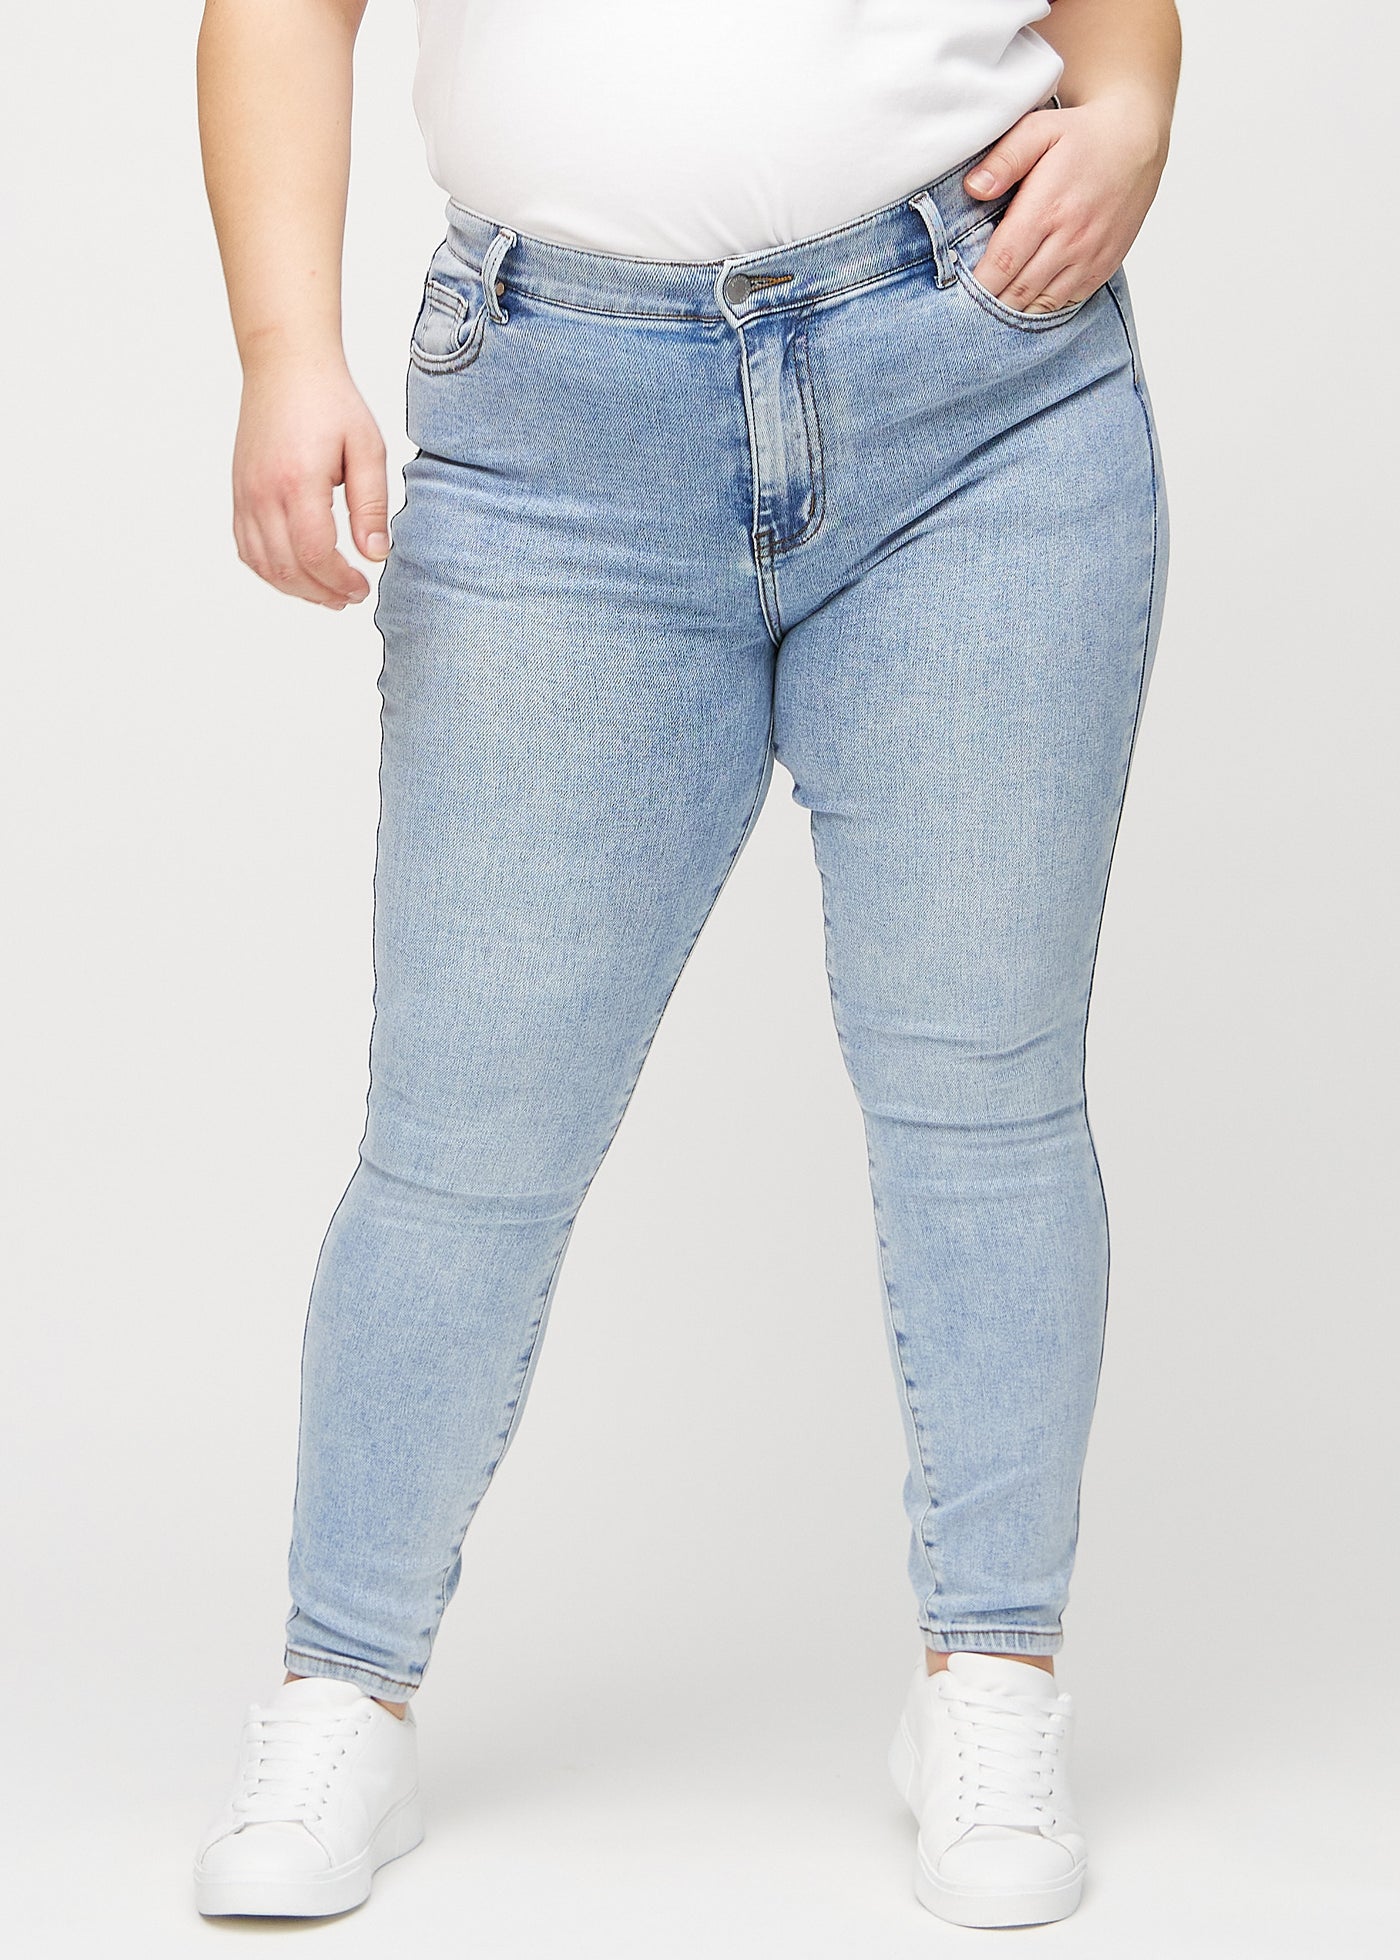 Lys denim skinny jeans, modelnavn Waves, som sidder tæt til benet på en plus-size model, set forfra.